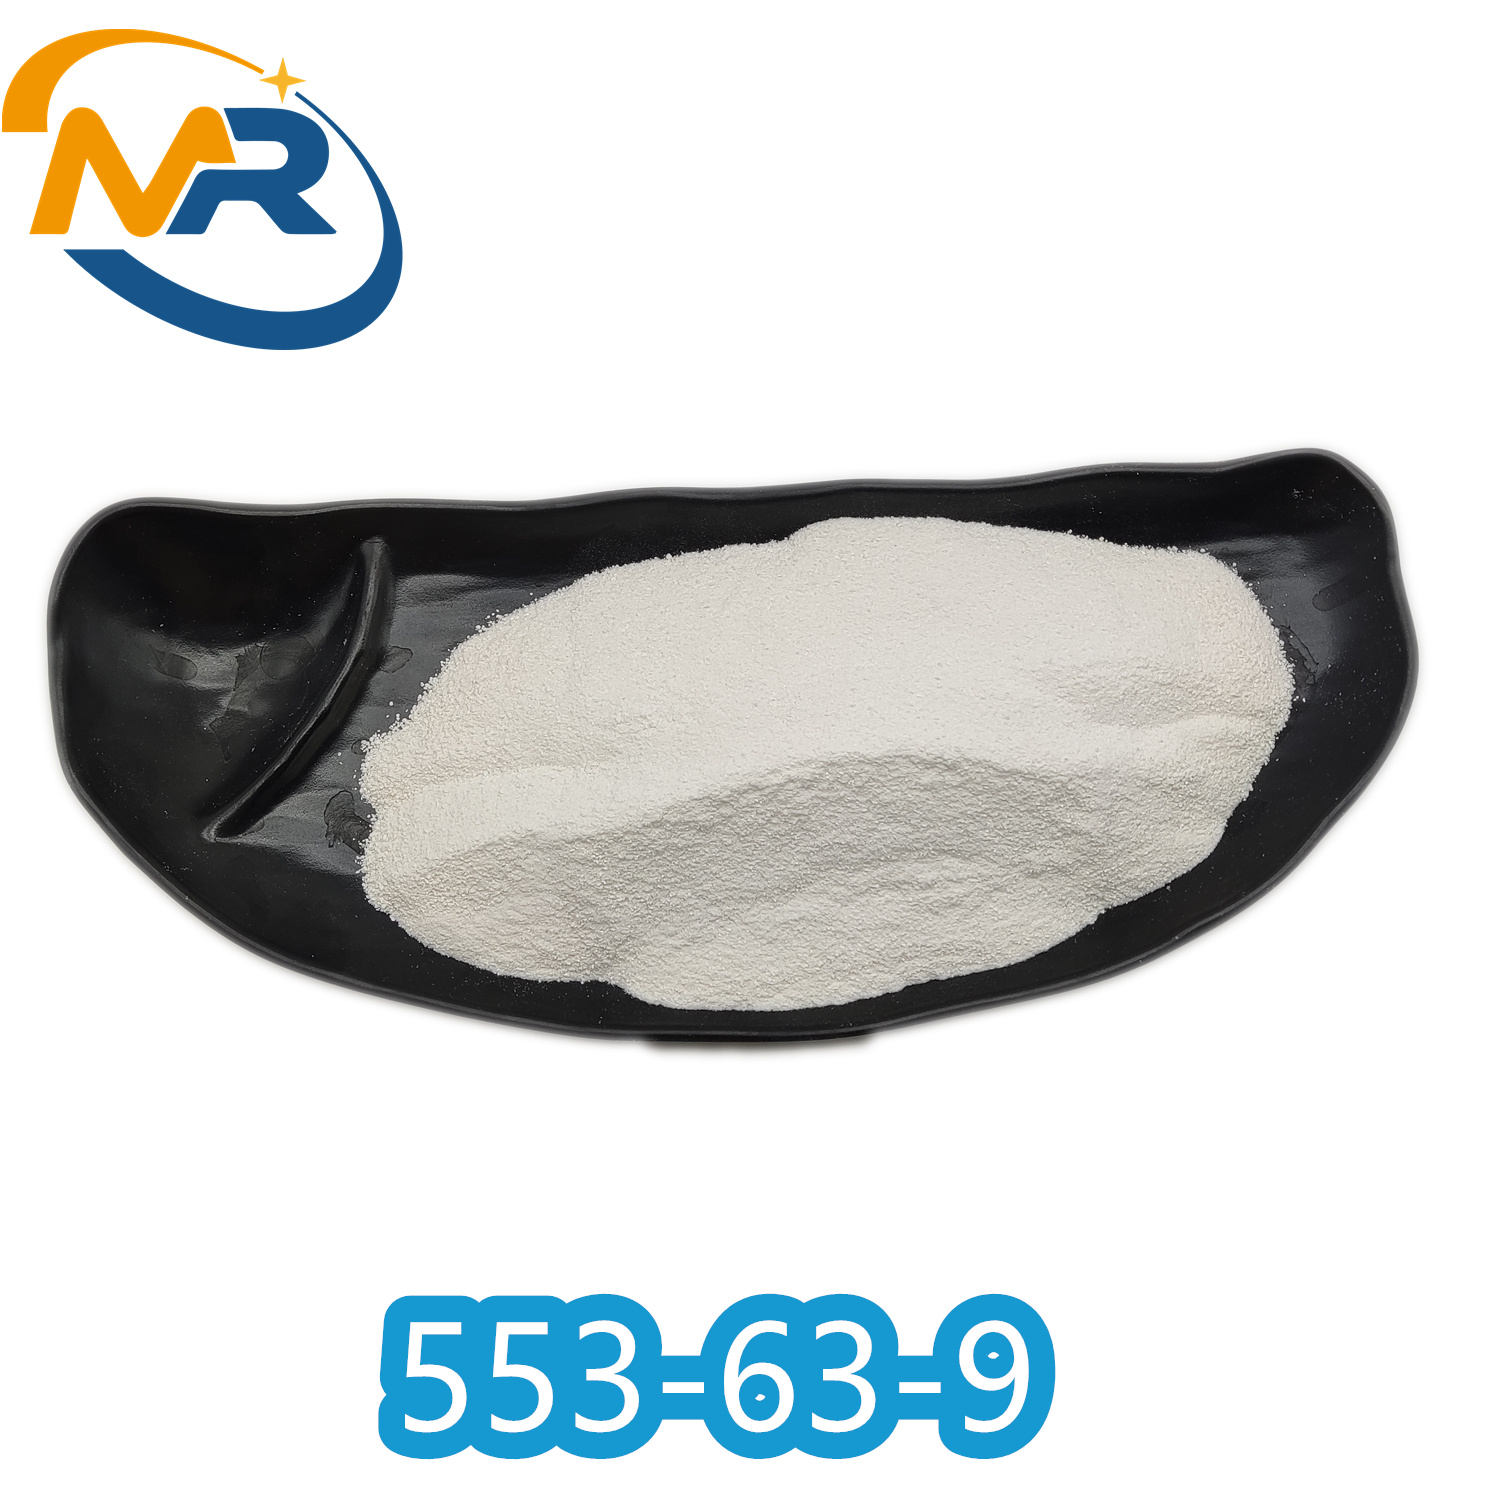 CAS 553-63-9	Dimethocaine hydrochloride